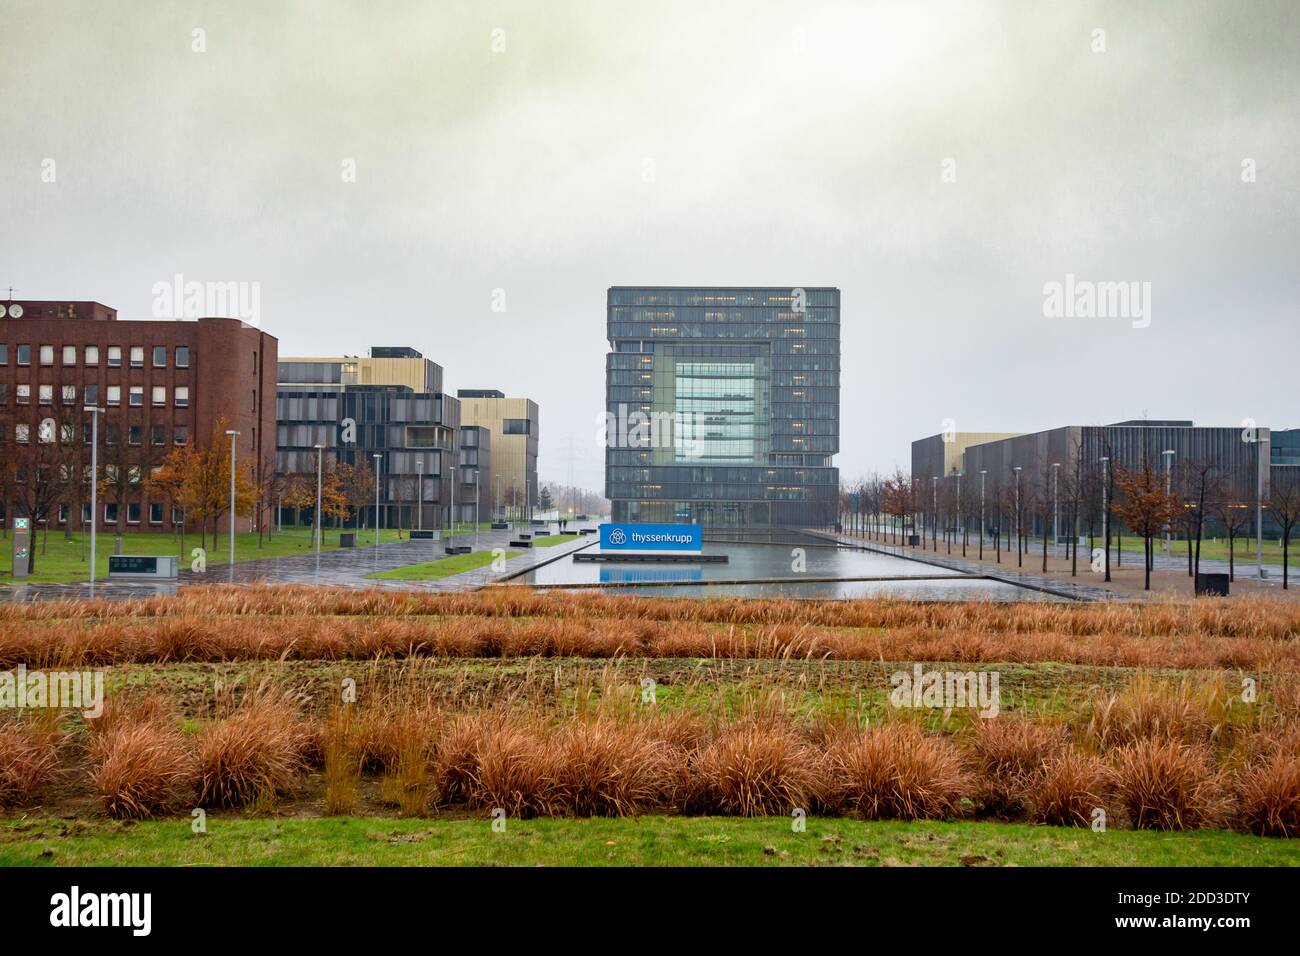 Hauptsitz der thyssenkrupp AG, Essen, Deutschland, 22.11.2020. Stockfoto